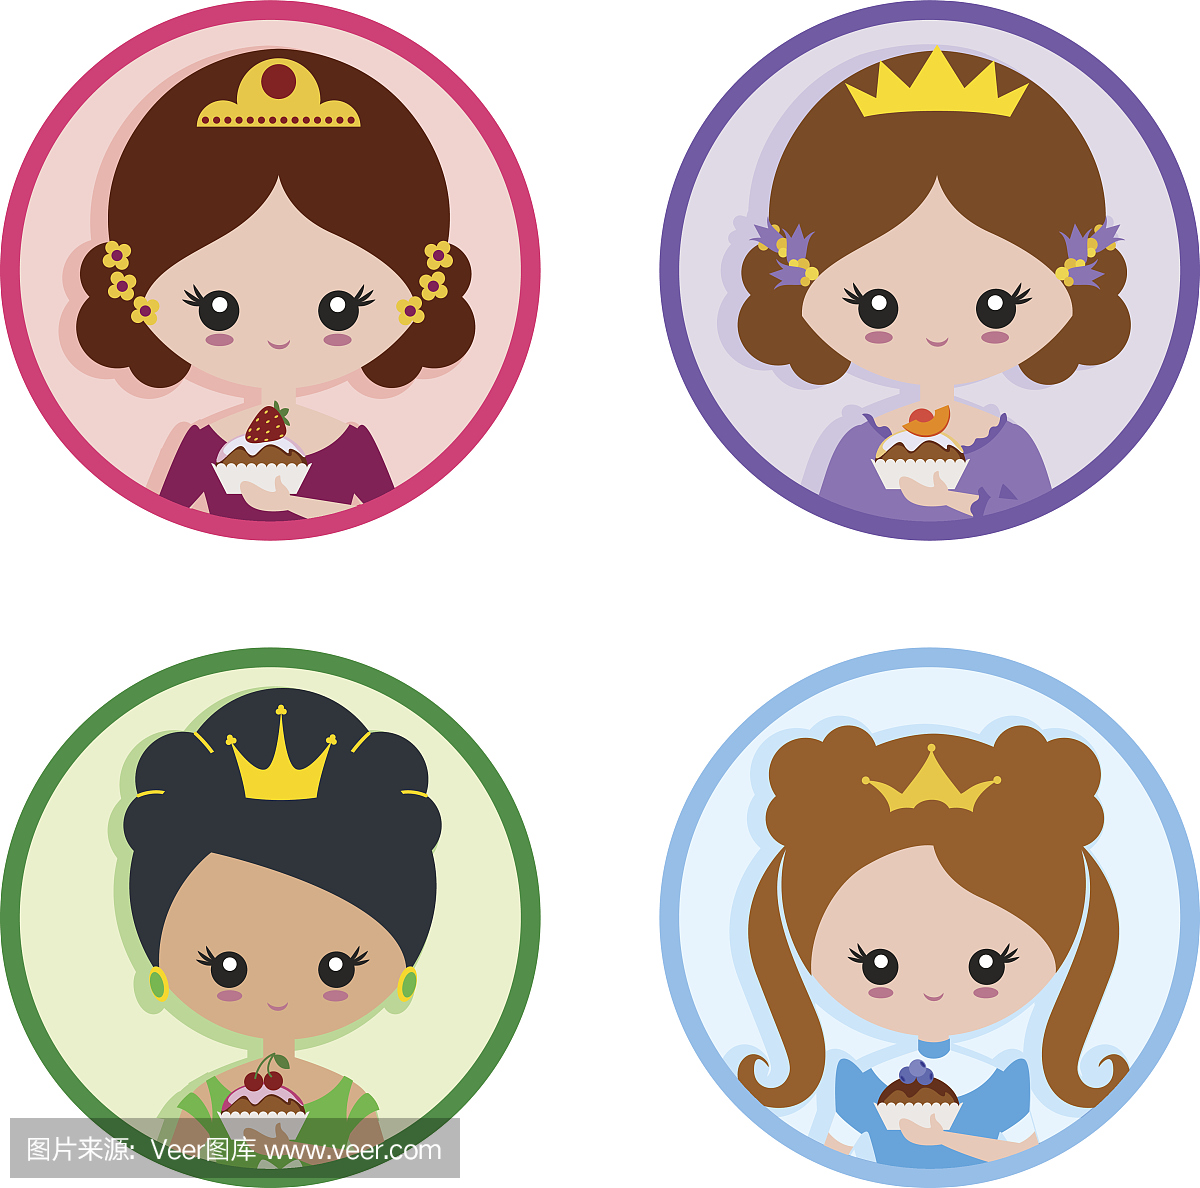 一套图标 - 蛋糕公主的肖像:草莓,桃子,蓝莓,樱桃